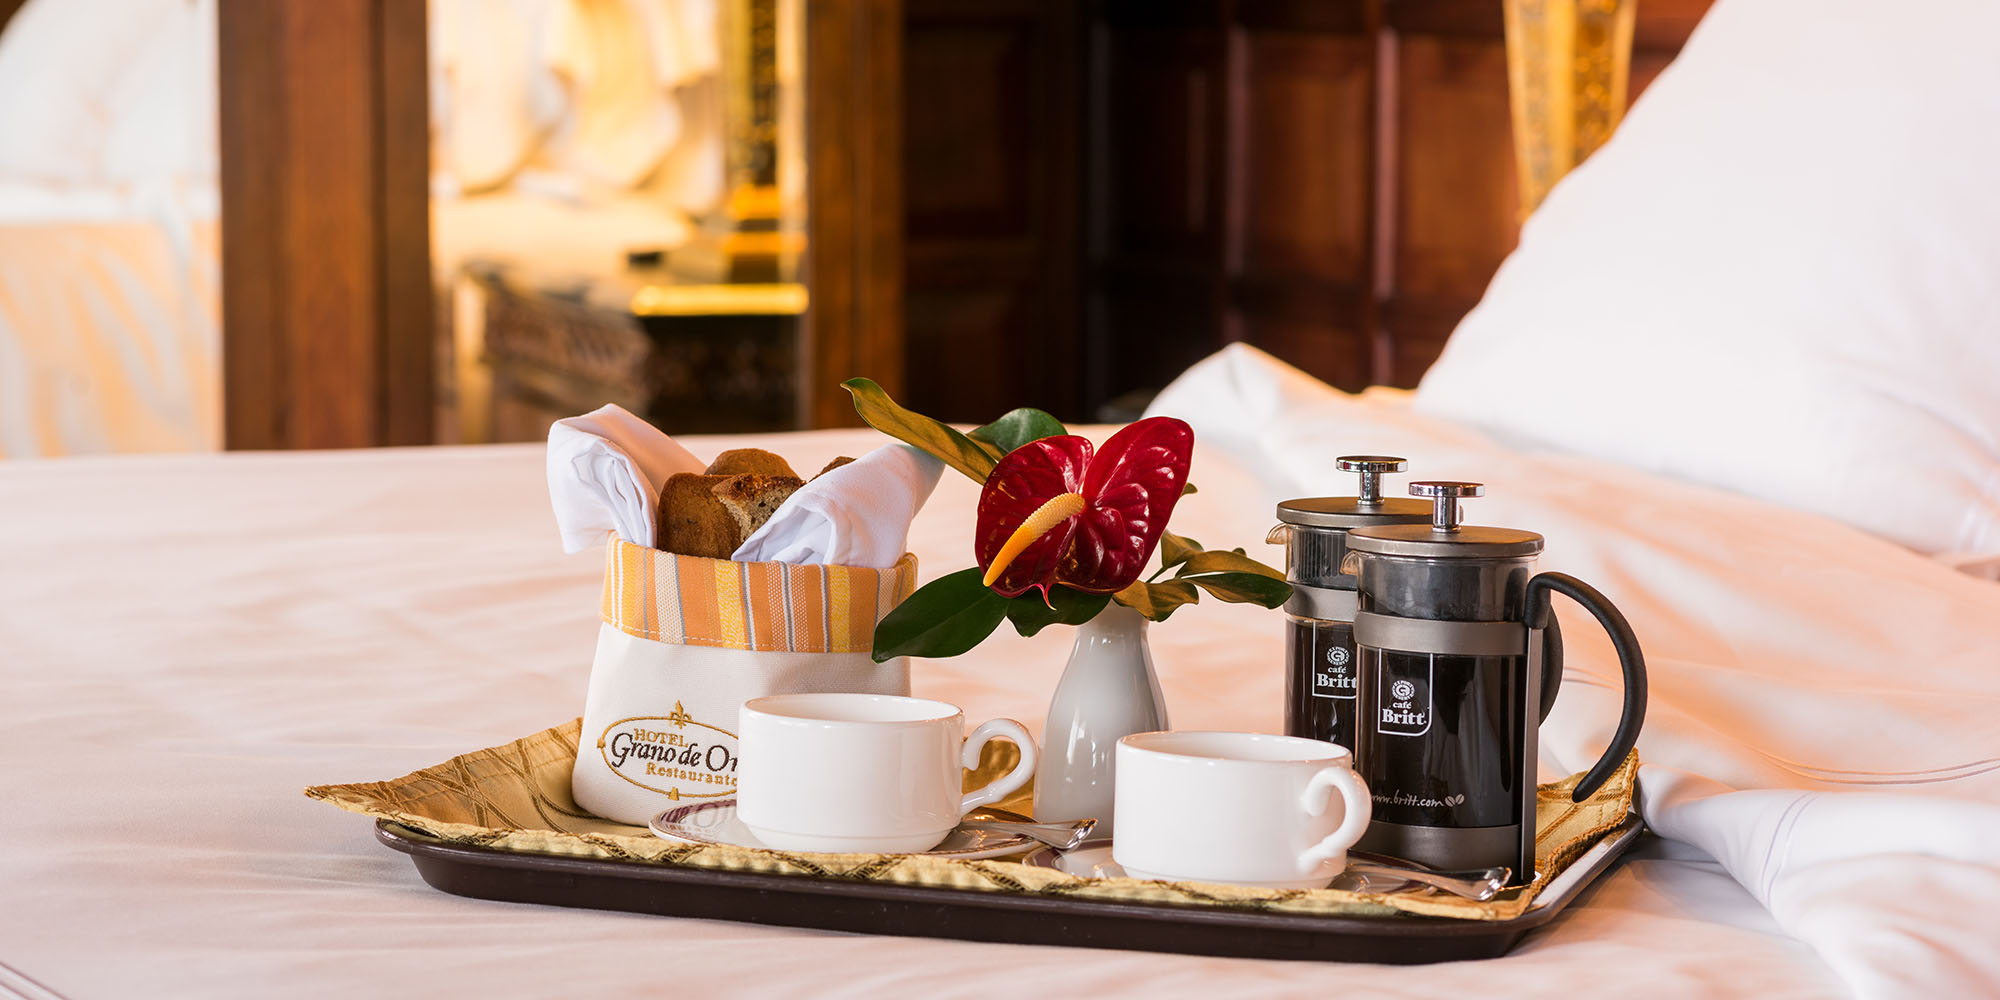 Hotel Grano De Oro: private breakfast in room